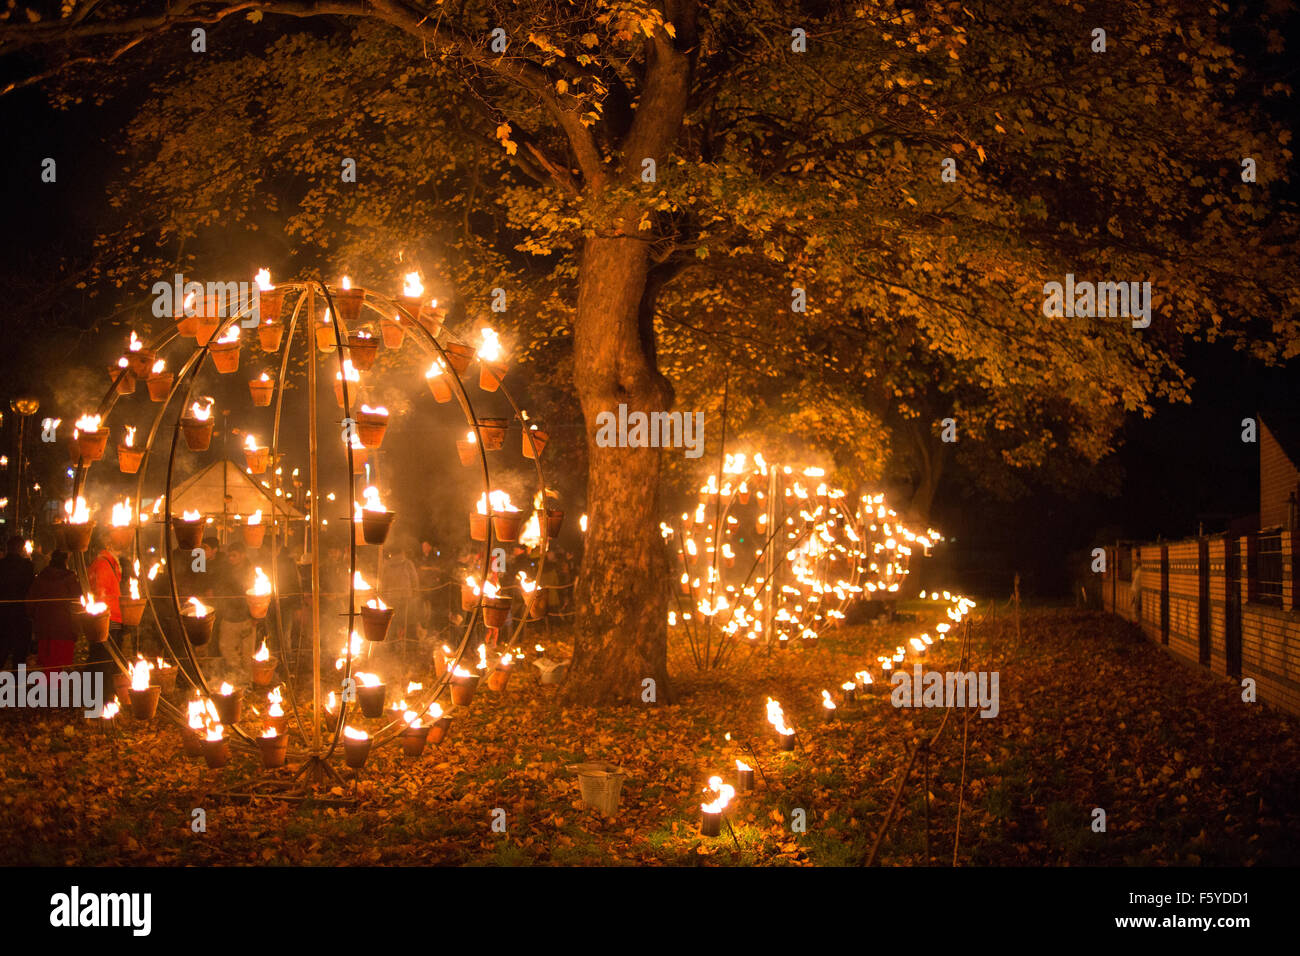 Le Diwali, le voyant sur le Belgrave Road, Leicester. La Fête des Lumières attire plus de 35 000 personnes. Banque D'Images